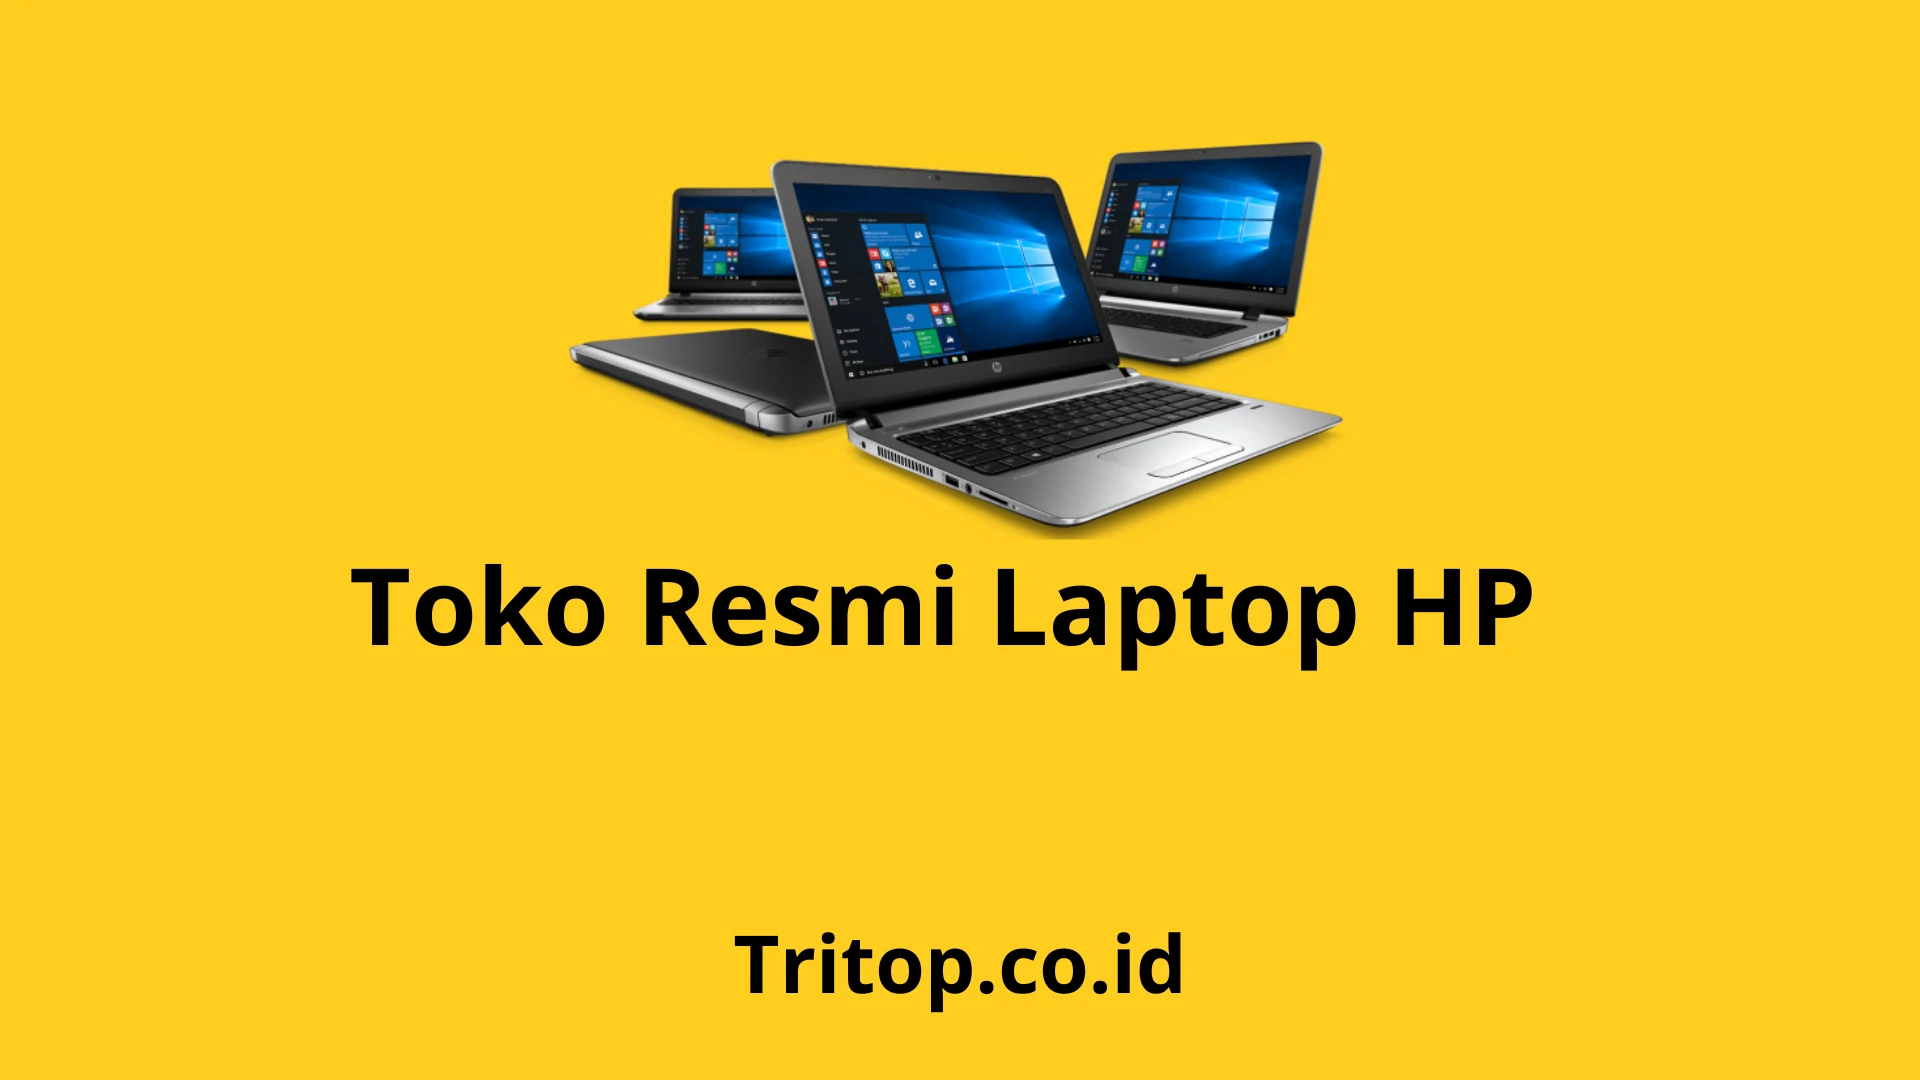 Toko Resmi Laptop HP Tritop.co.id